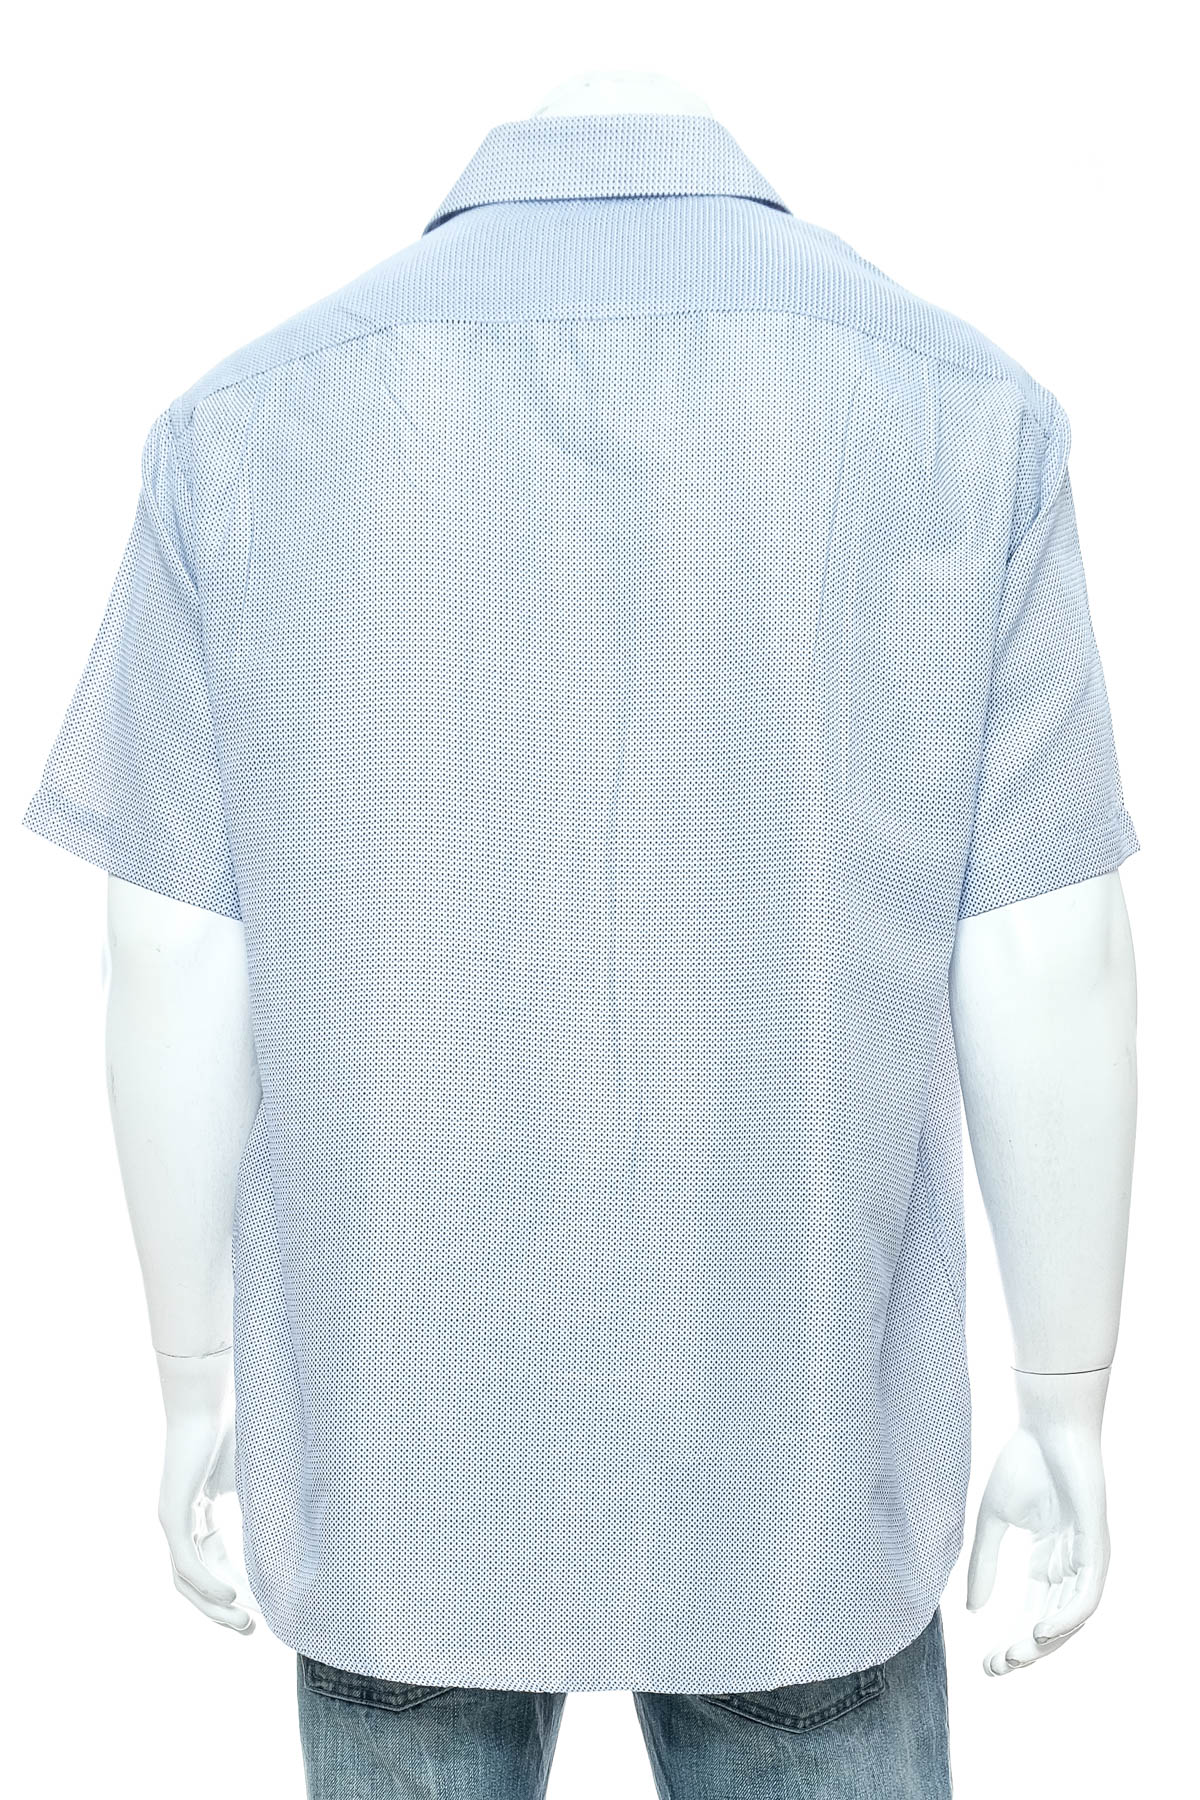 Ανδρικό πουκάμισο - Amparo - 1